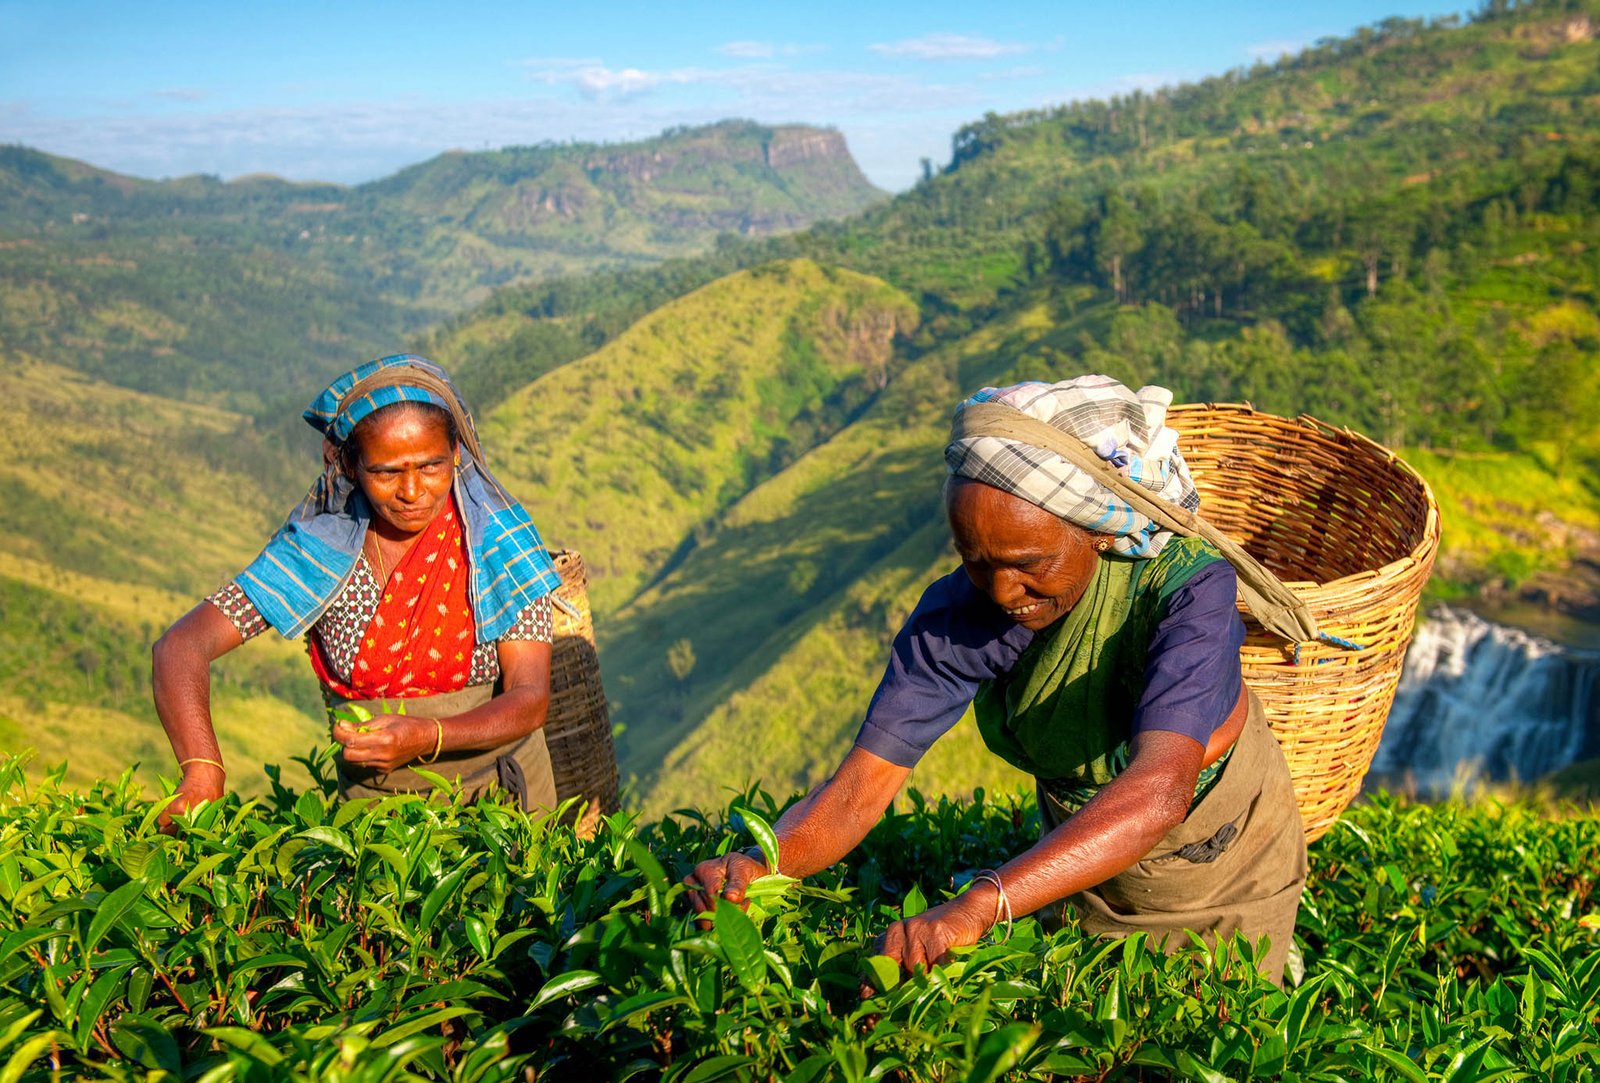 Picking tea in Sri Lanka